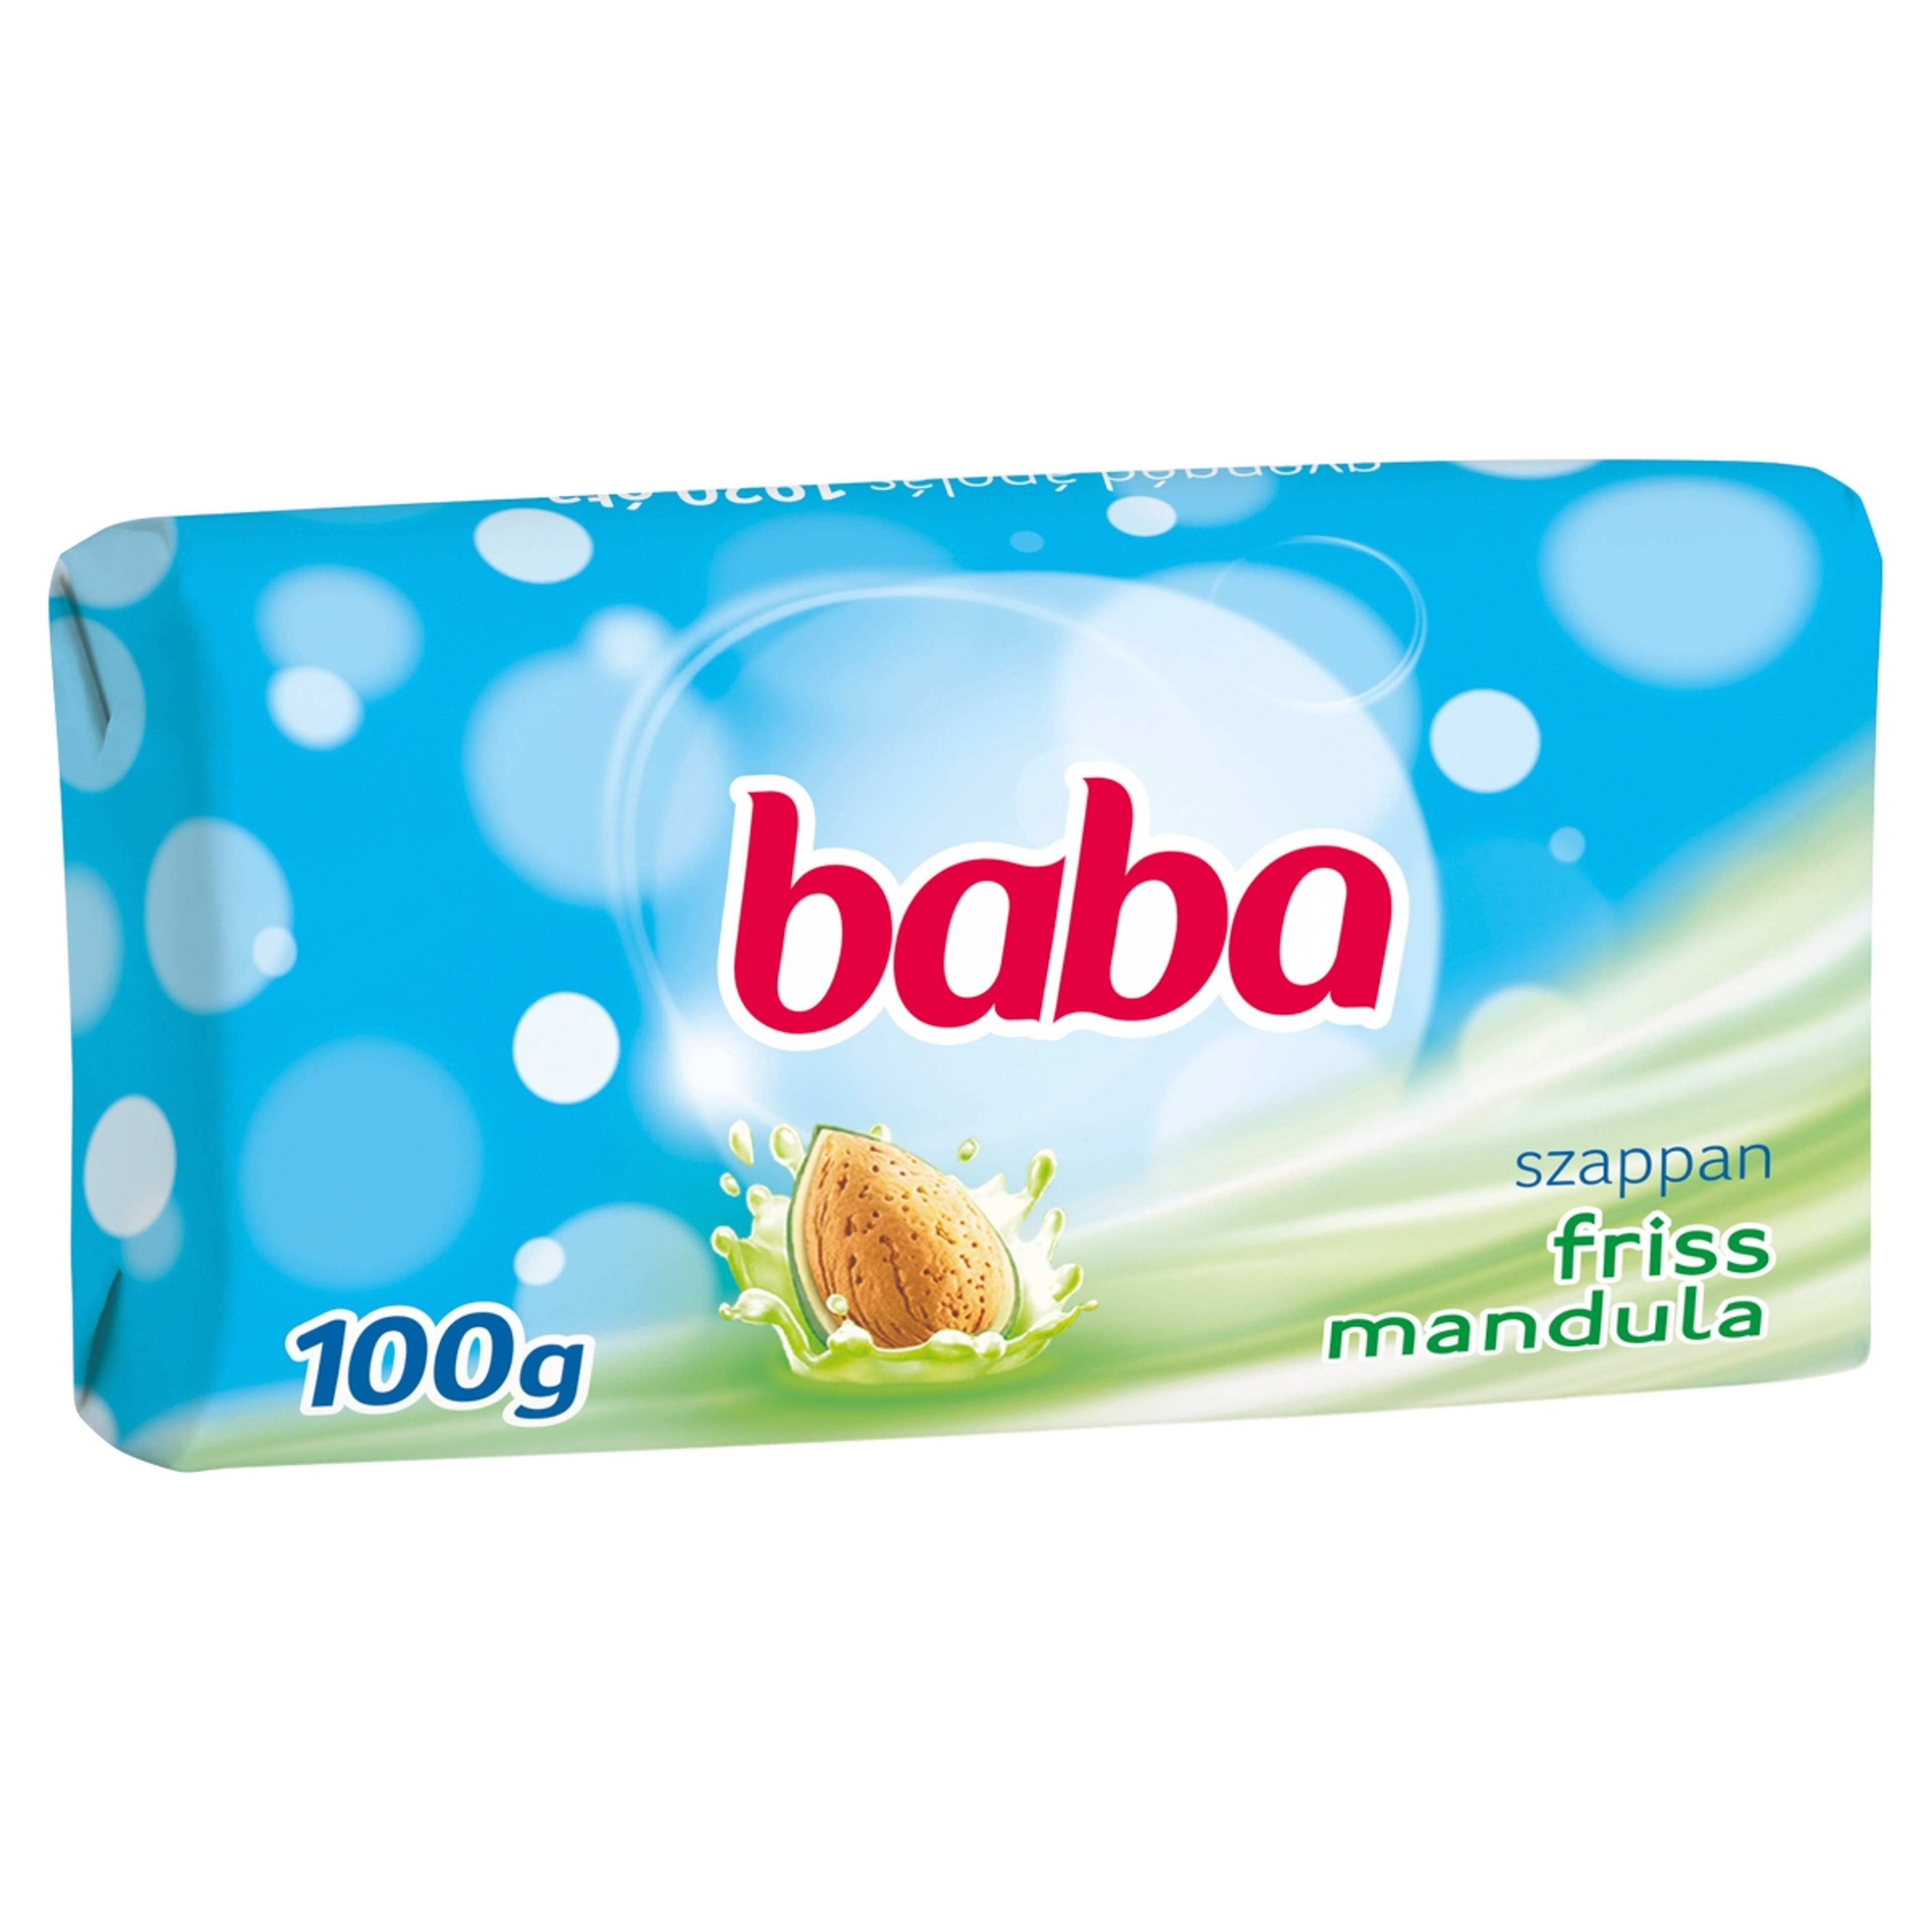 Baba szappan friss mandula - 100 g